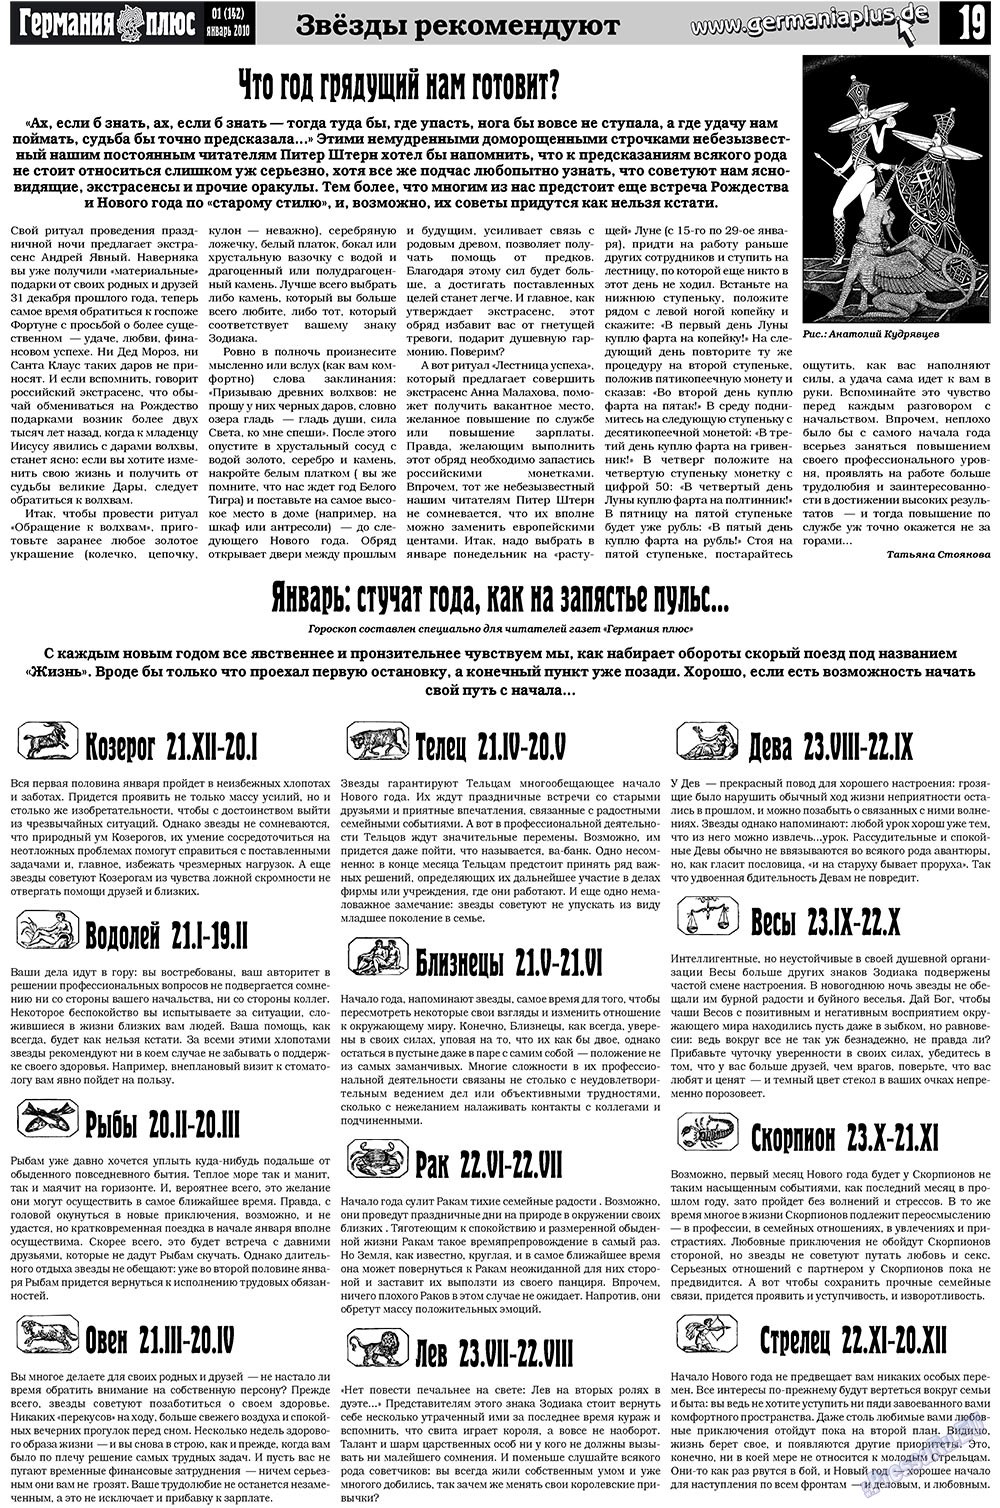 Германия плюс, газета. 2010 №1 стр.19